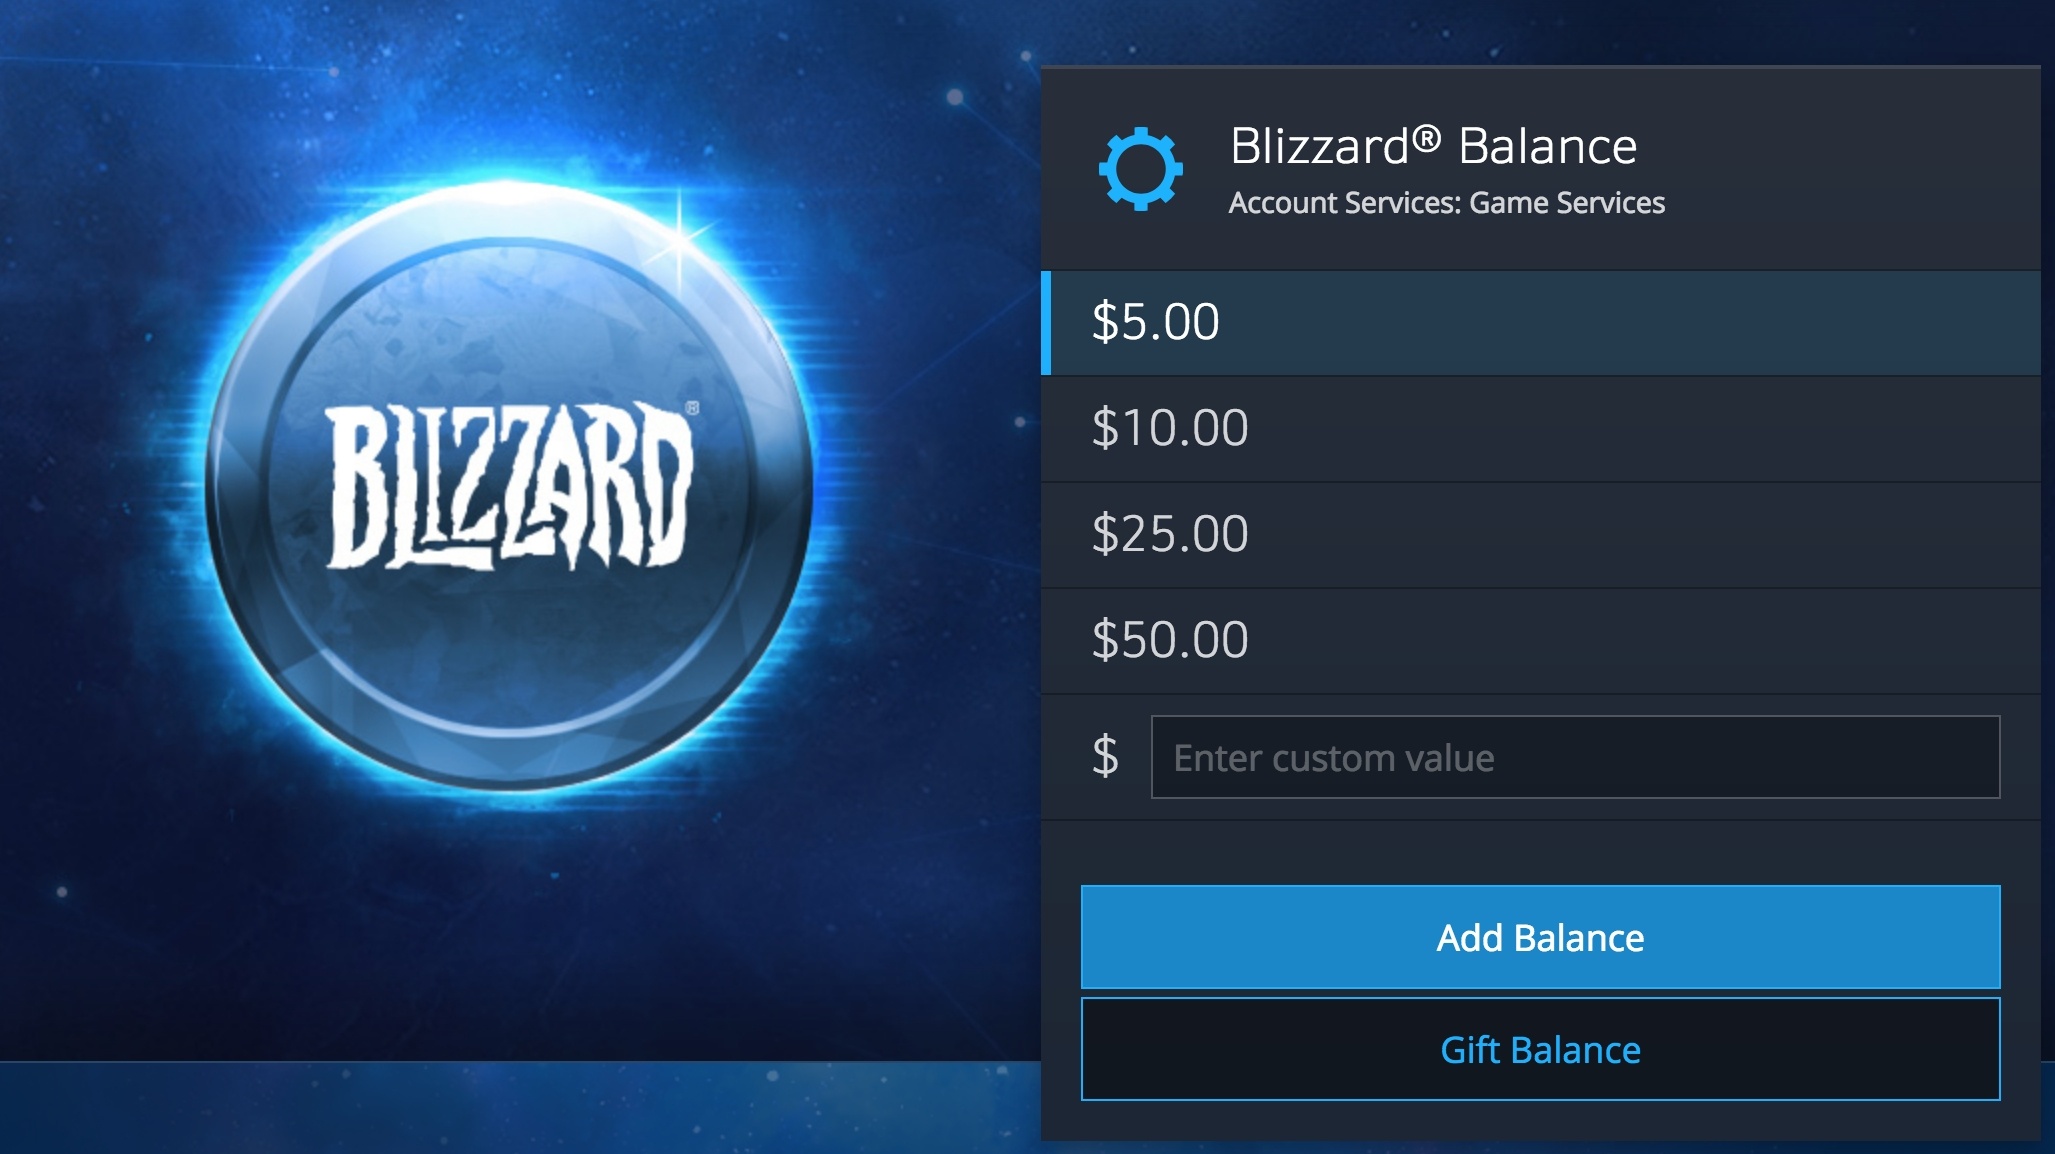 Blizzard BATTLE.NET Authenticator/ PC : Video Games 